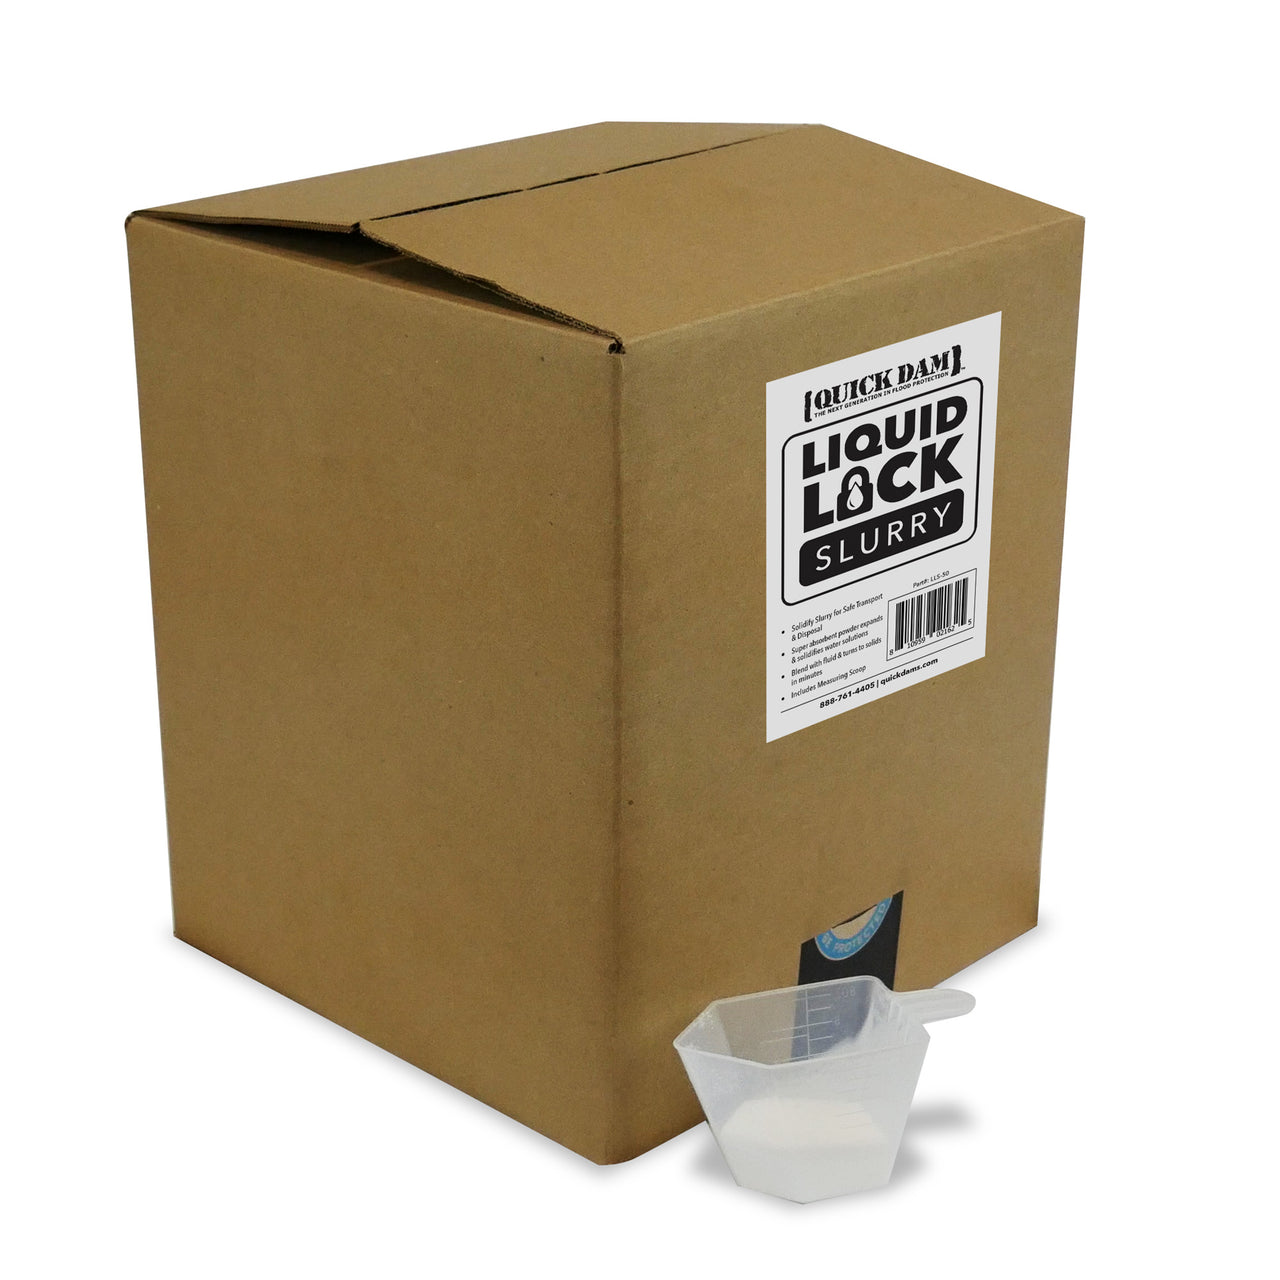 Quick Dam Liquid Lock Slurry 50lb box with scoop, treats 1100 glns